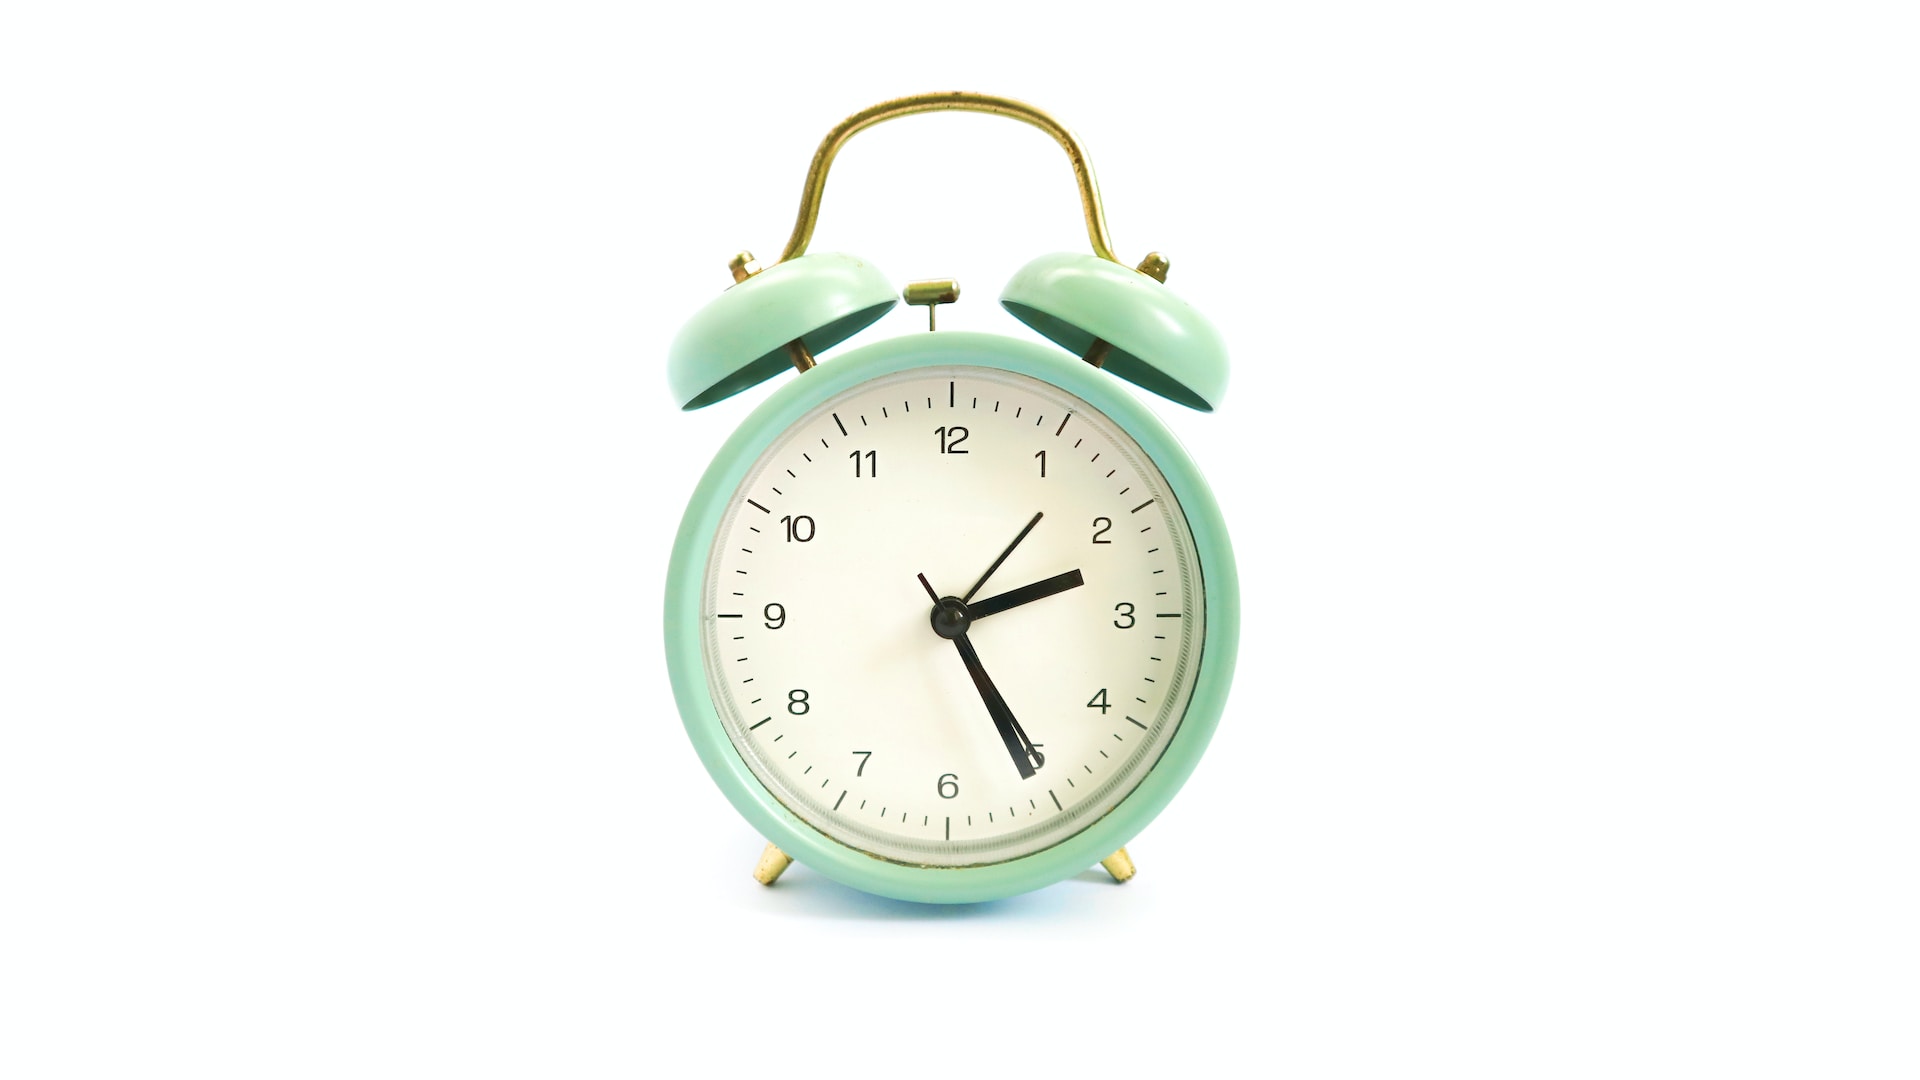 An alarm clock